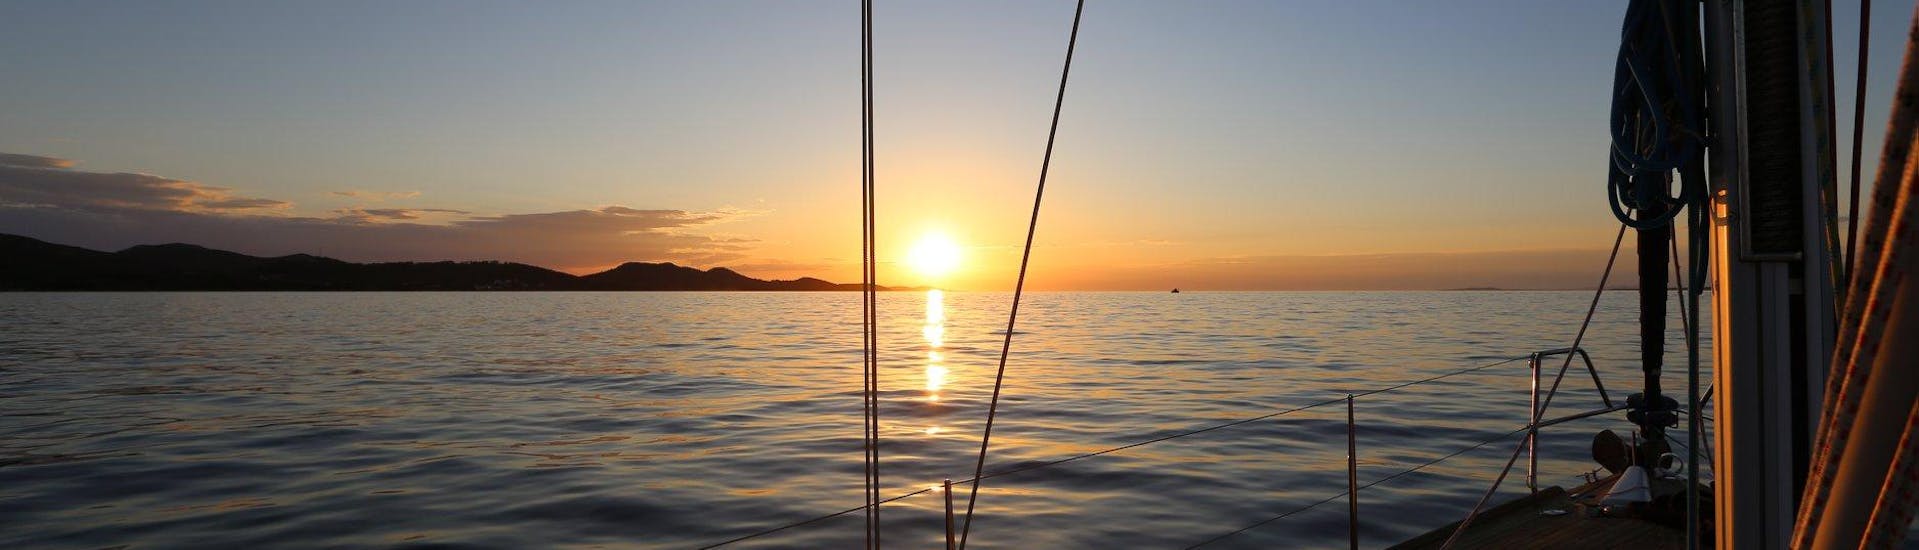 Zeilboottocht van Mali Lošinj met zonsondergang.